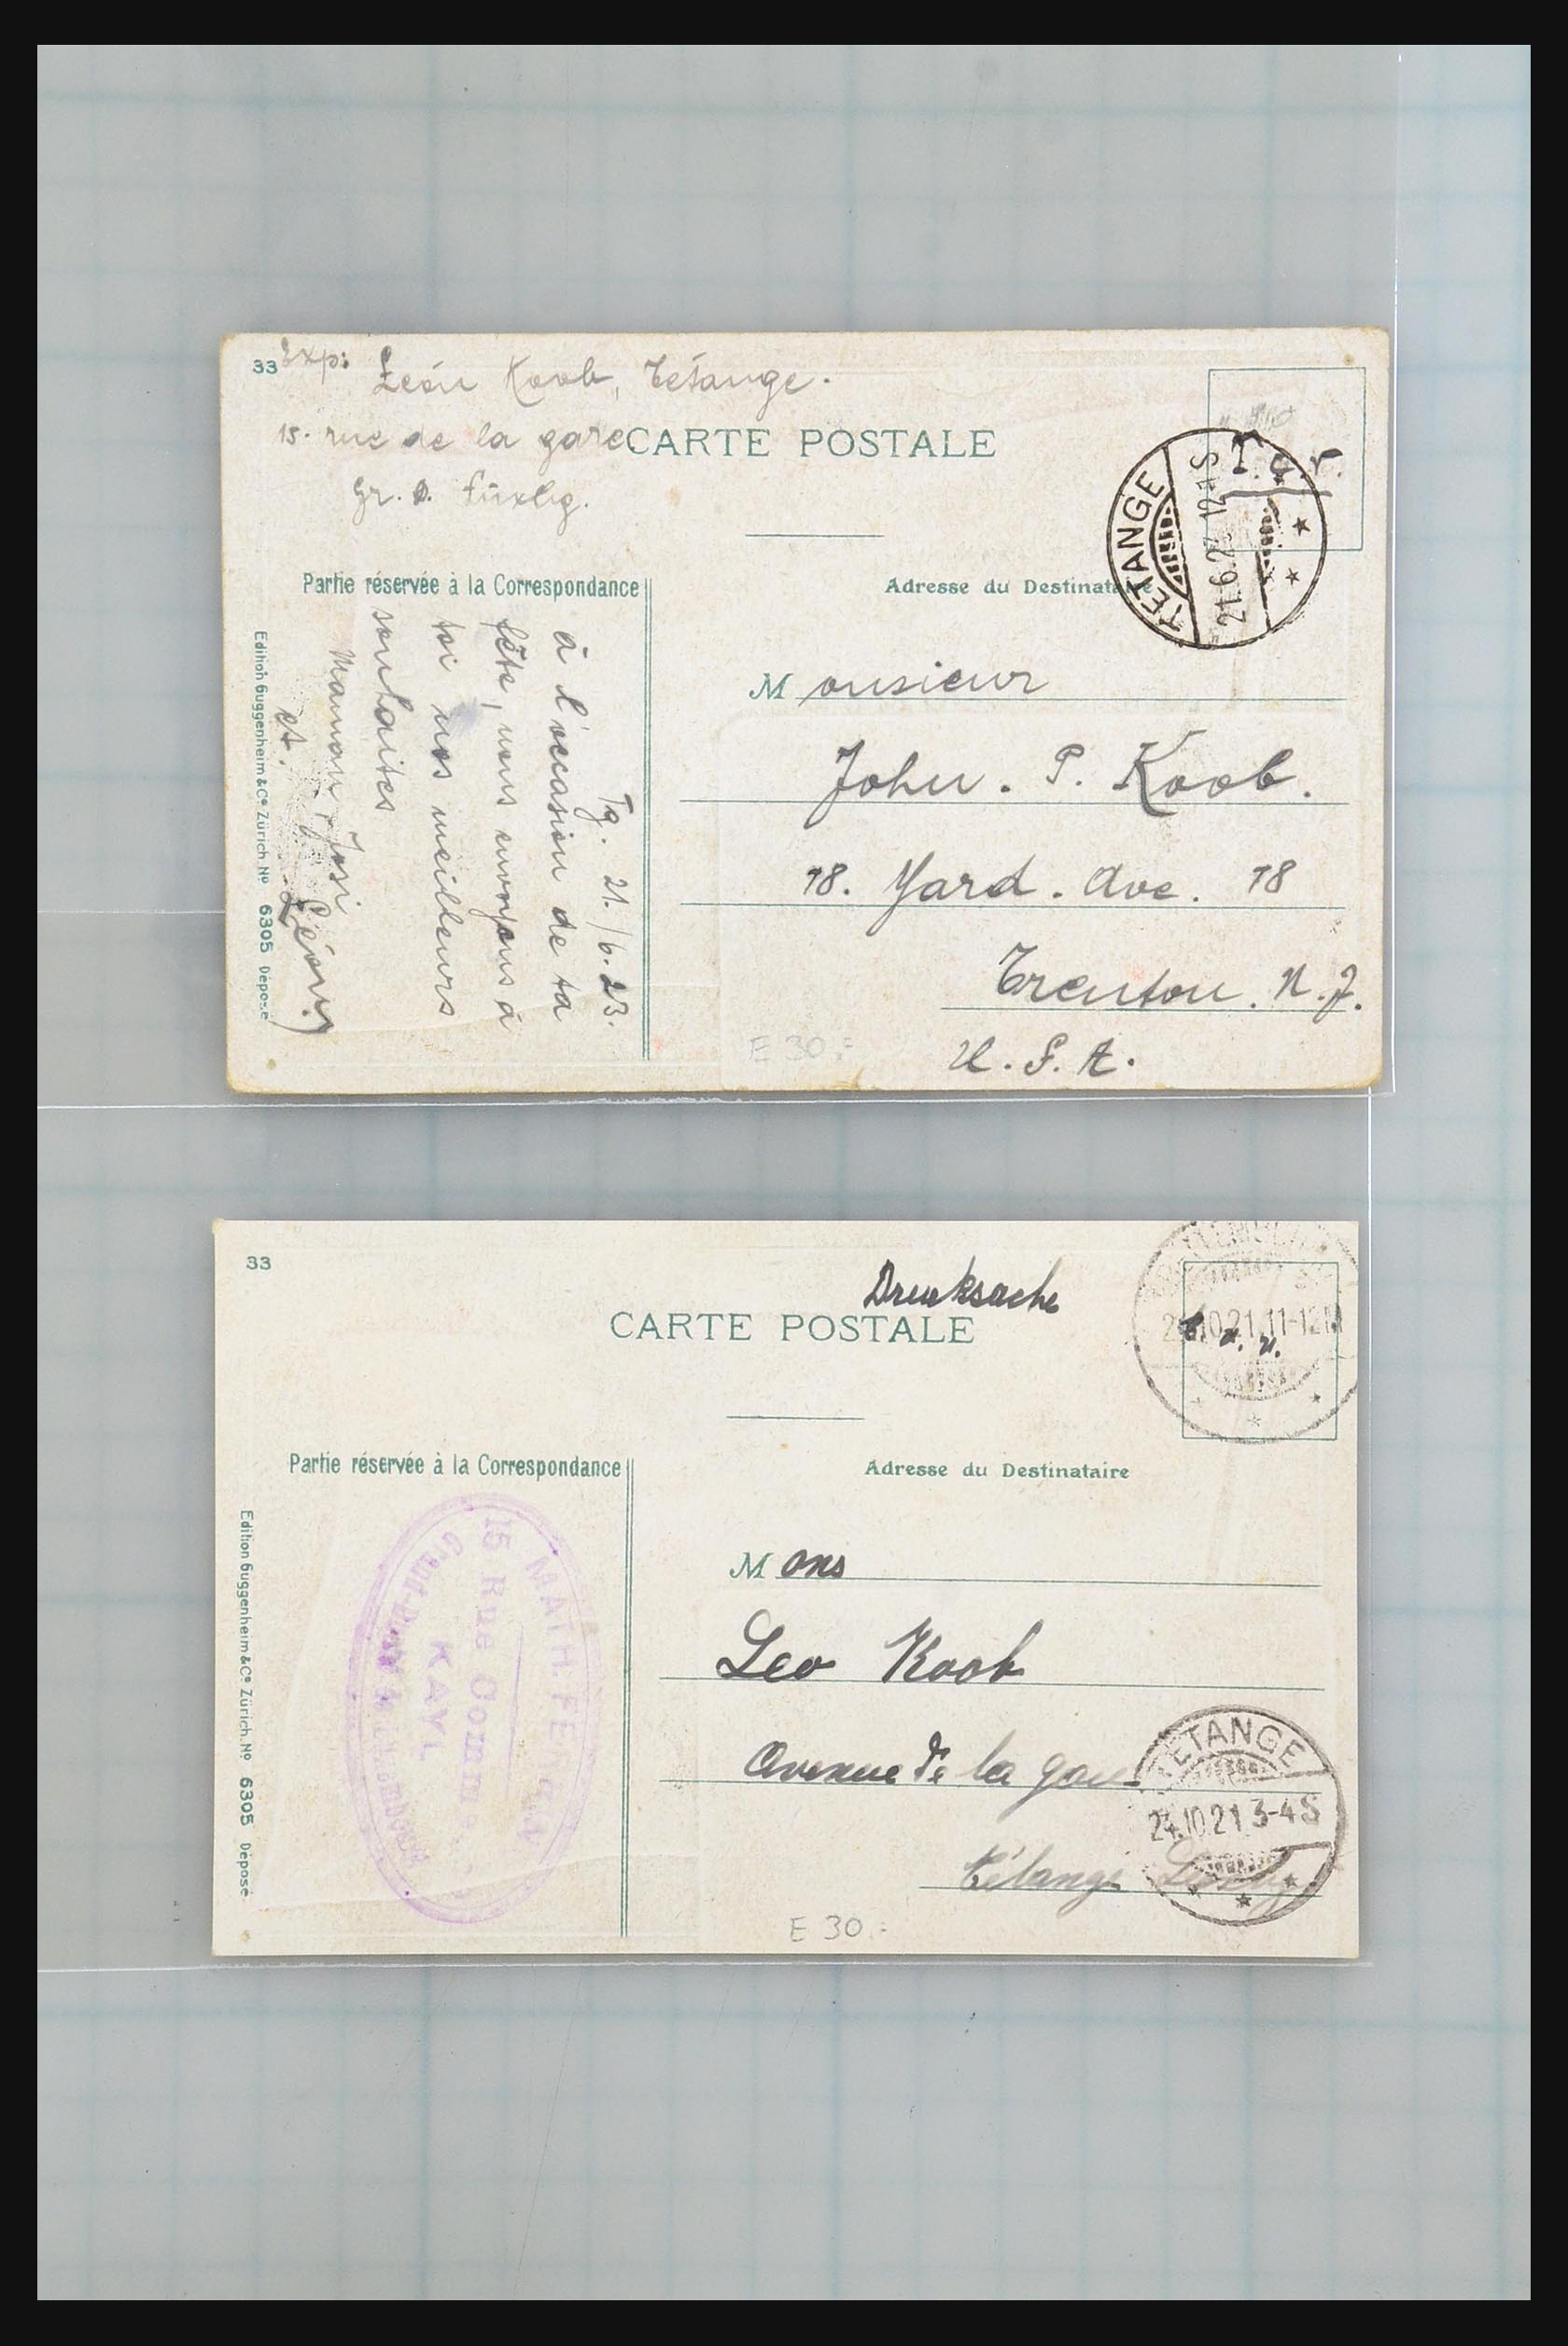 31358 023 - 31358 Portugal/Luxemburg/Griekenland brieven 1880-1960.